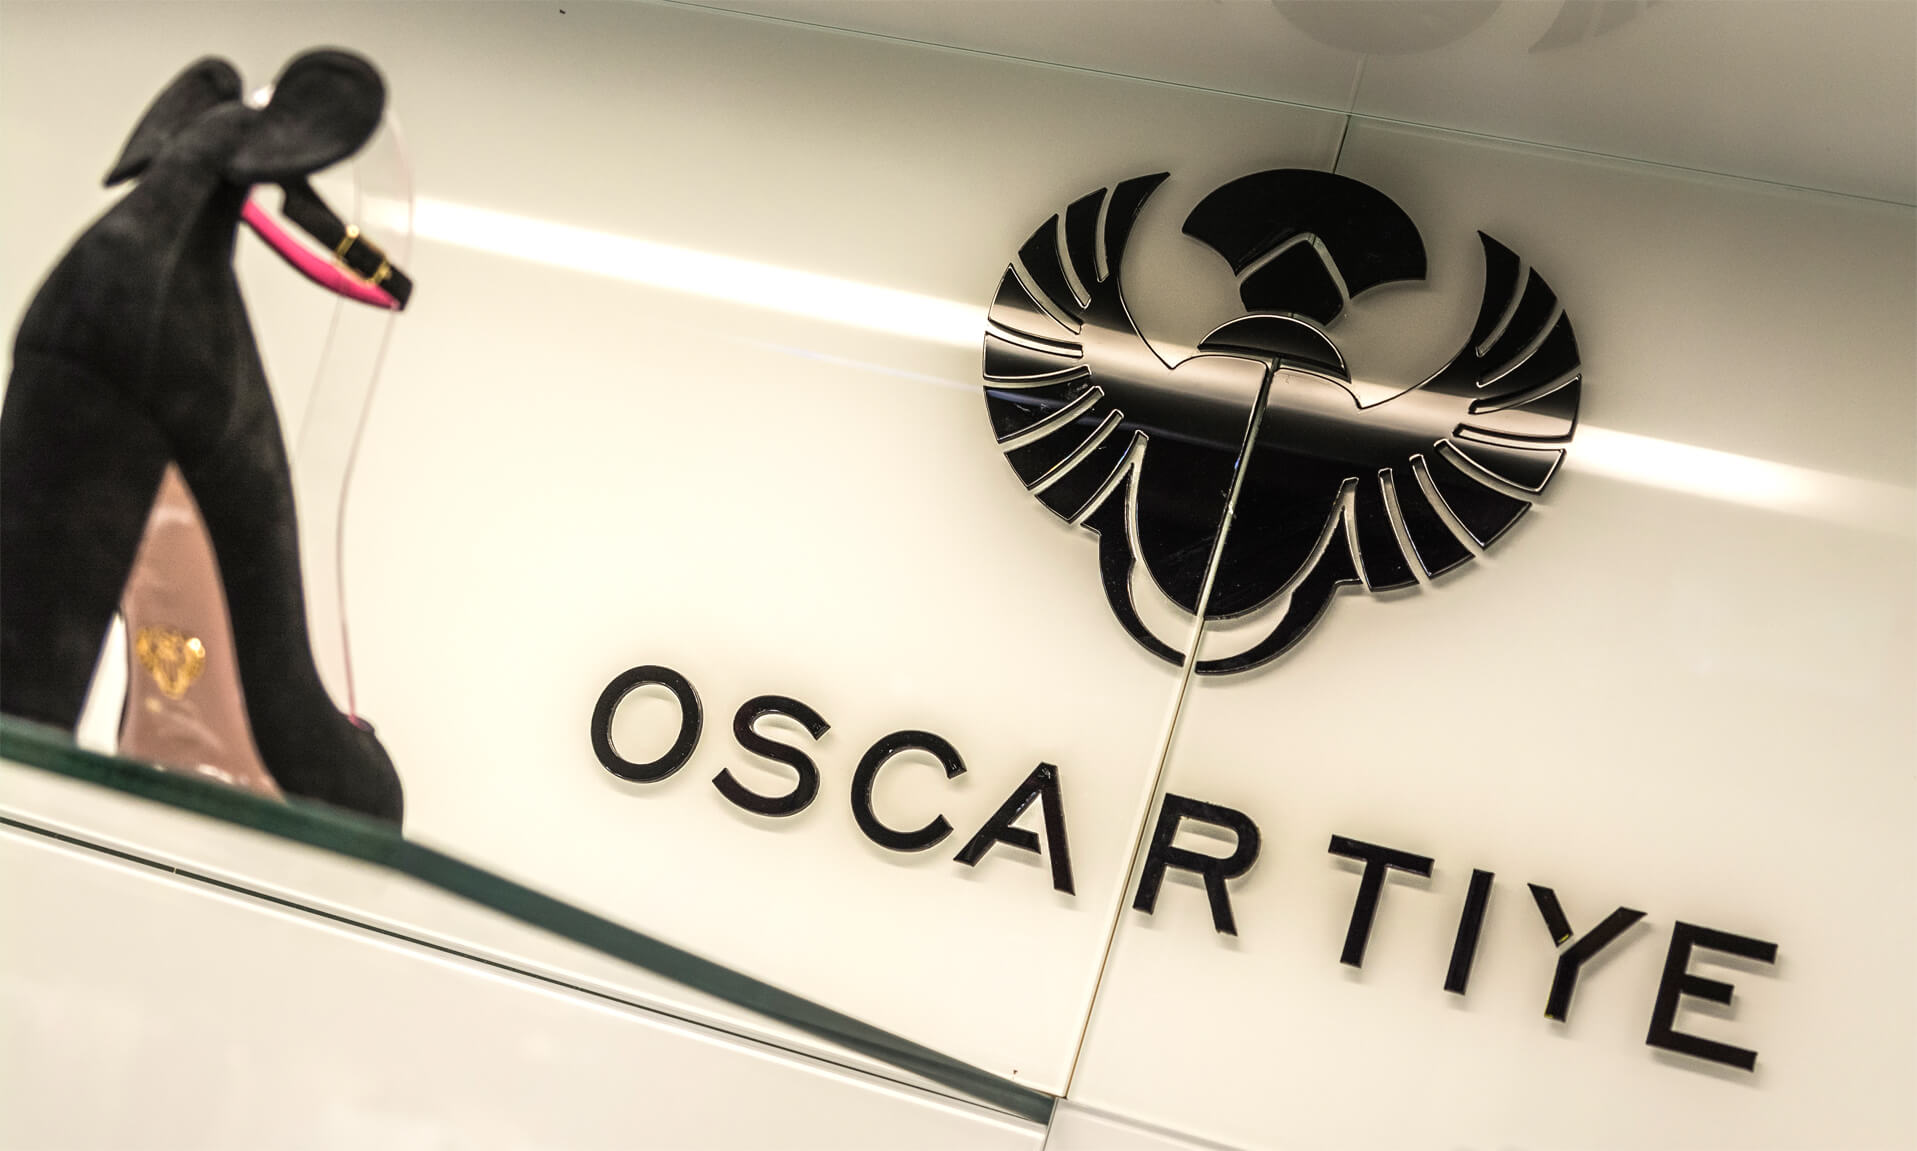 Oscartye - Oscar Tiye - logo e lettere 3D in acrilico di colore nero